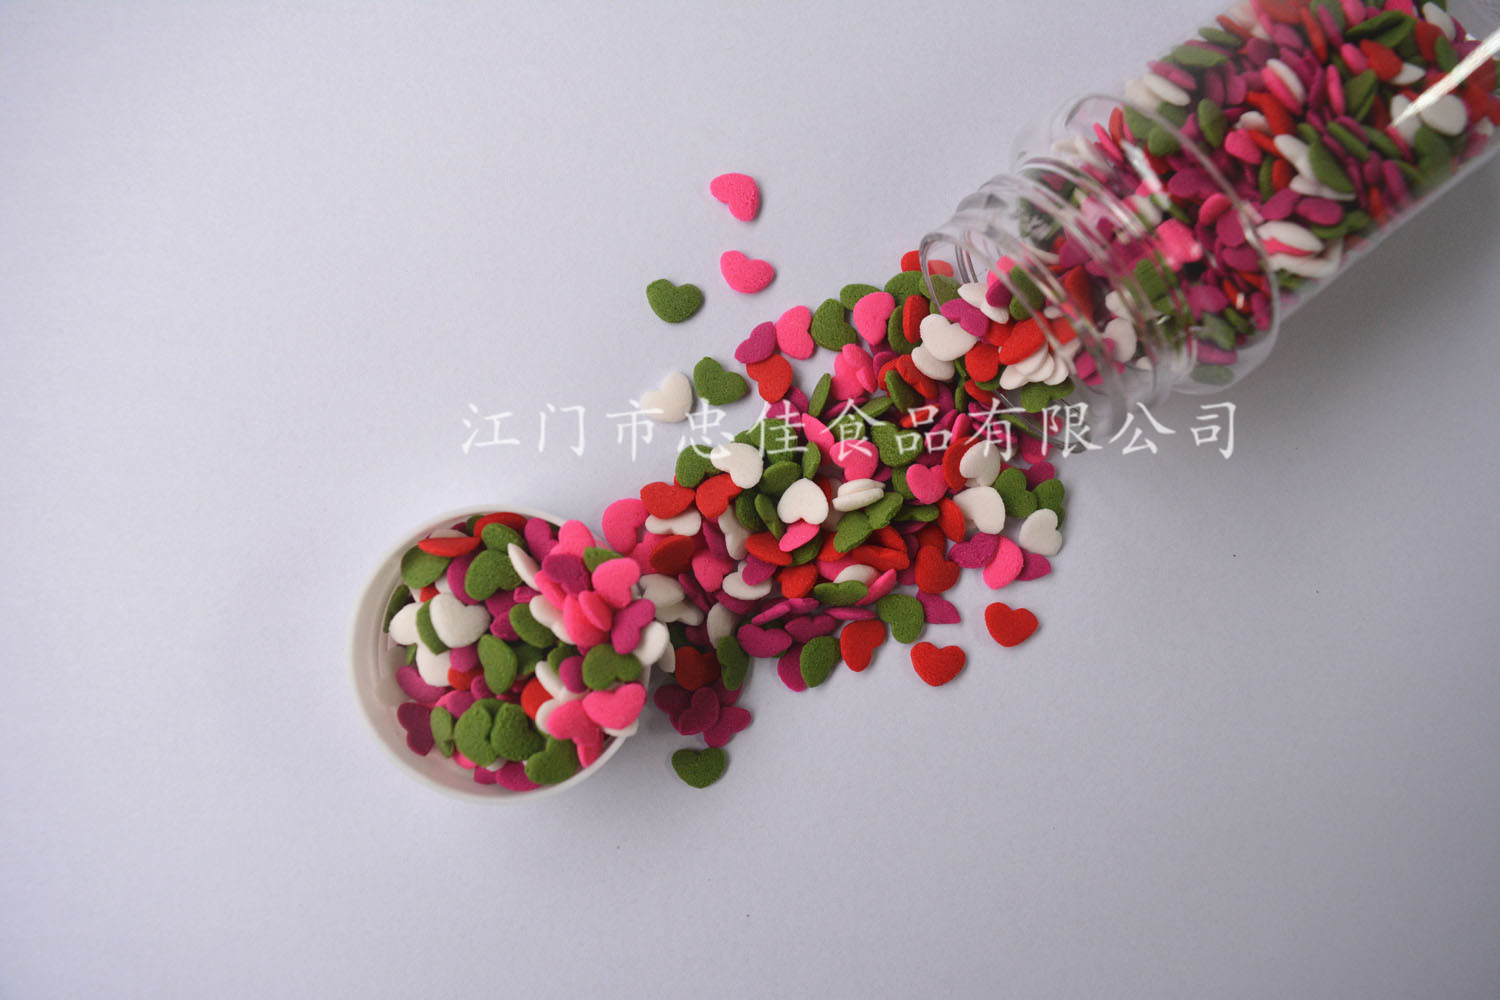 心形切片糖sprinkles in bulk for dessert decoration heart shape